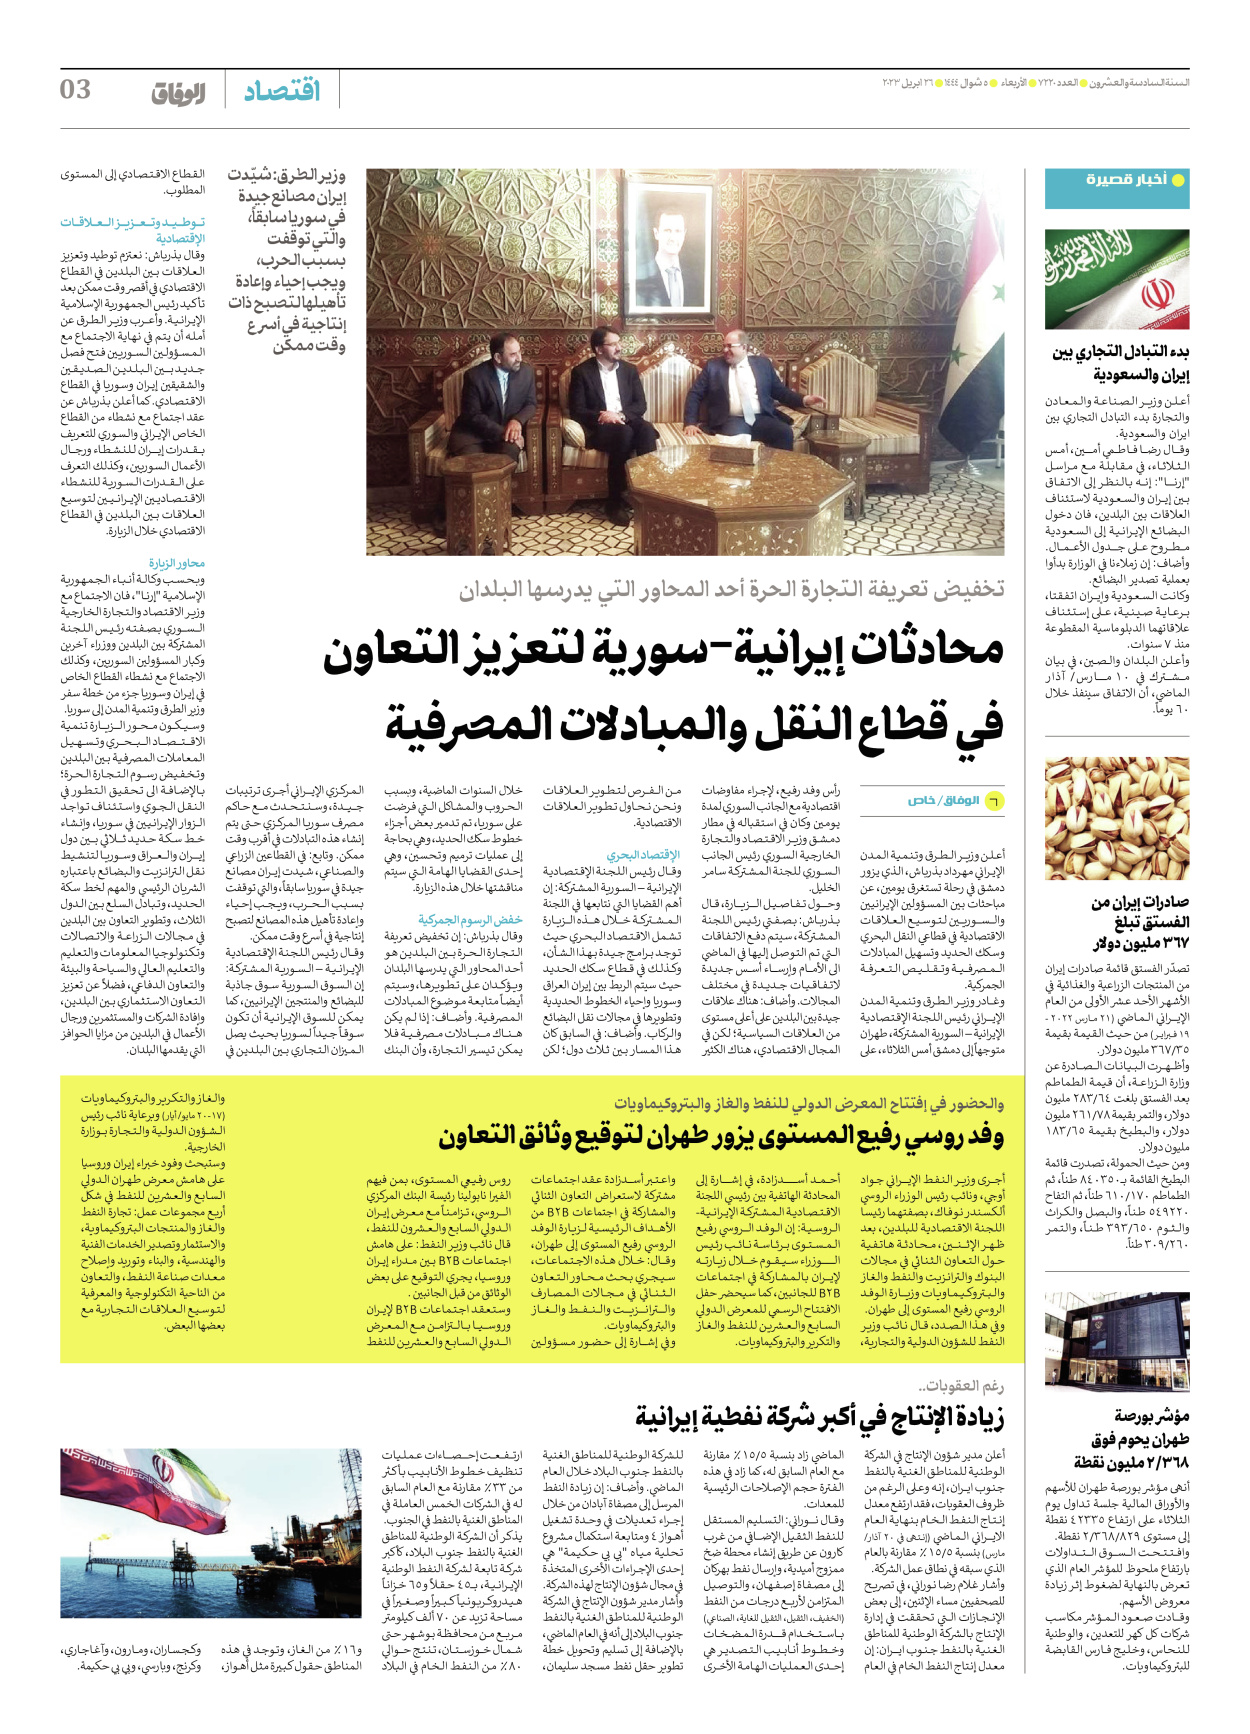 صحیفة ایران الدولیة الوفاق - العدد سبعة آلاف ومائتان وعشرون - ٢٦ أبريل ٢٠٢٣ - الصفحة ۳